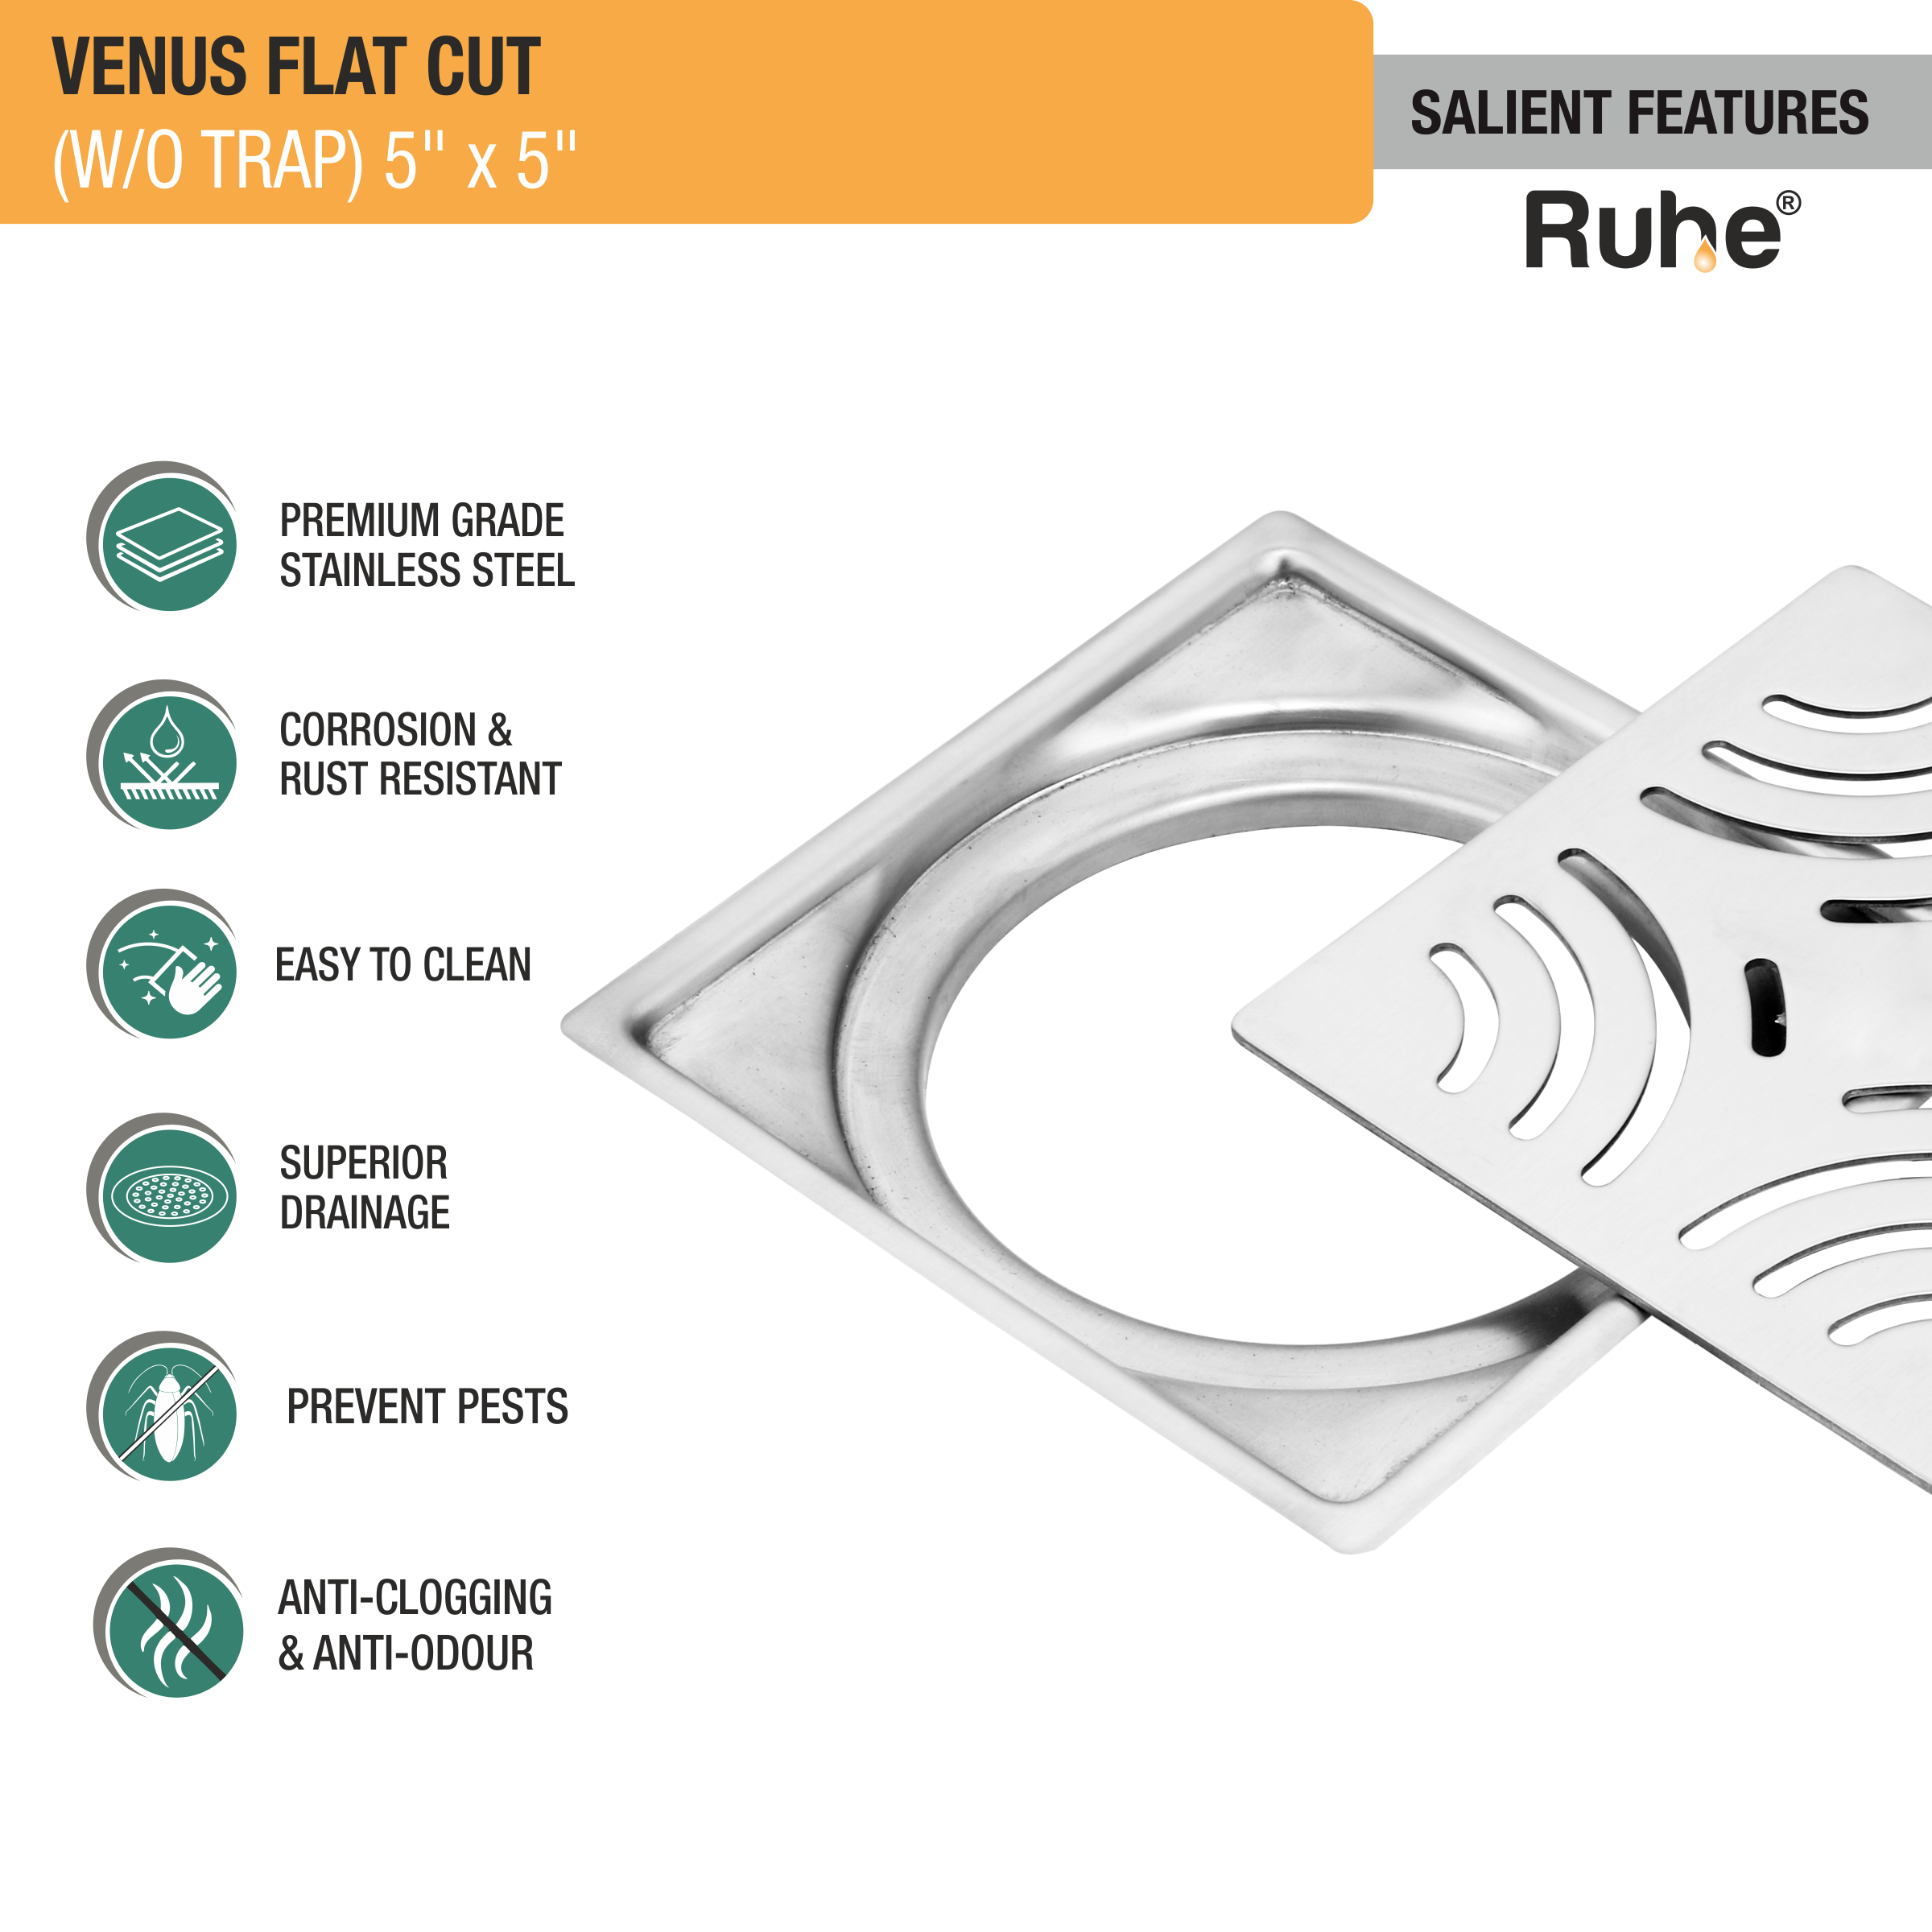 Venus Square Premium Flat Cut Floor Drain (5 x 5 Inches) features